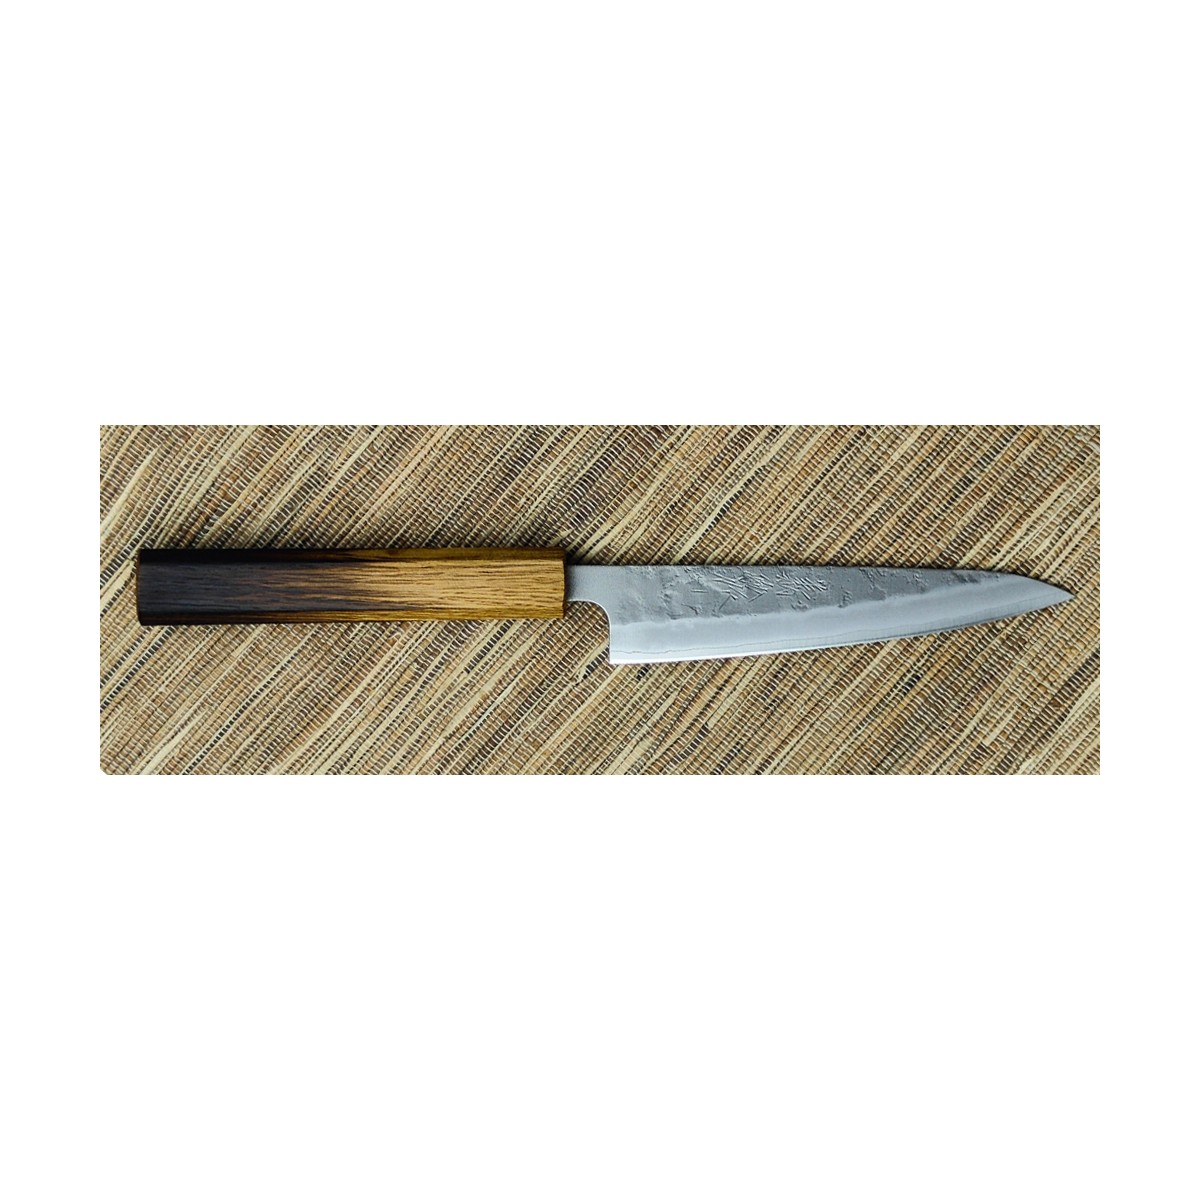 Couteau d'électricien universel et couteau intérieur de rechange, Valeurs  de dénudage du Ø : 8-28 mm, Modèle sans lame